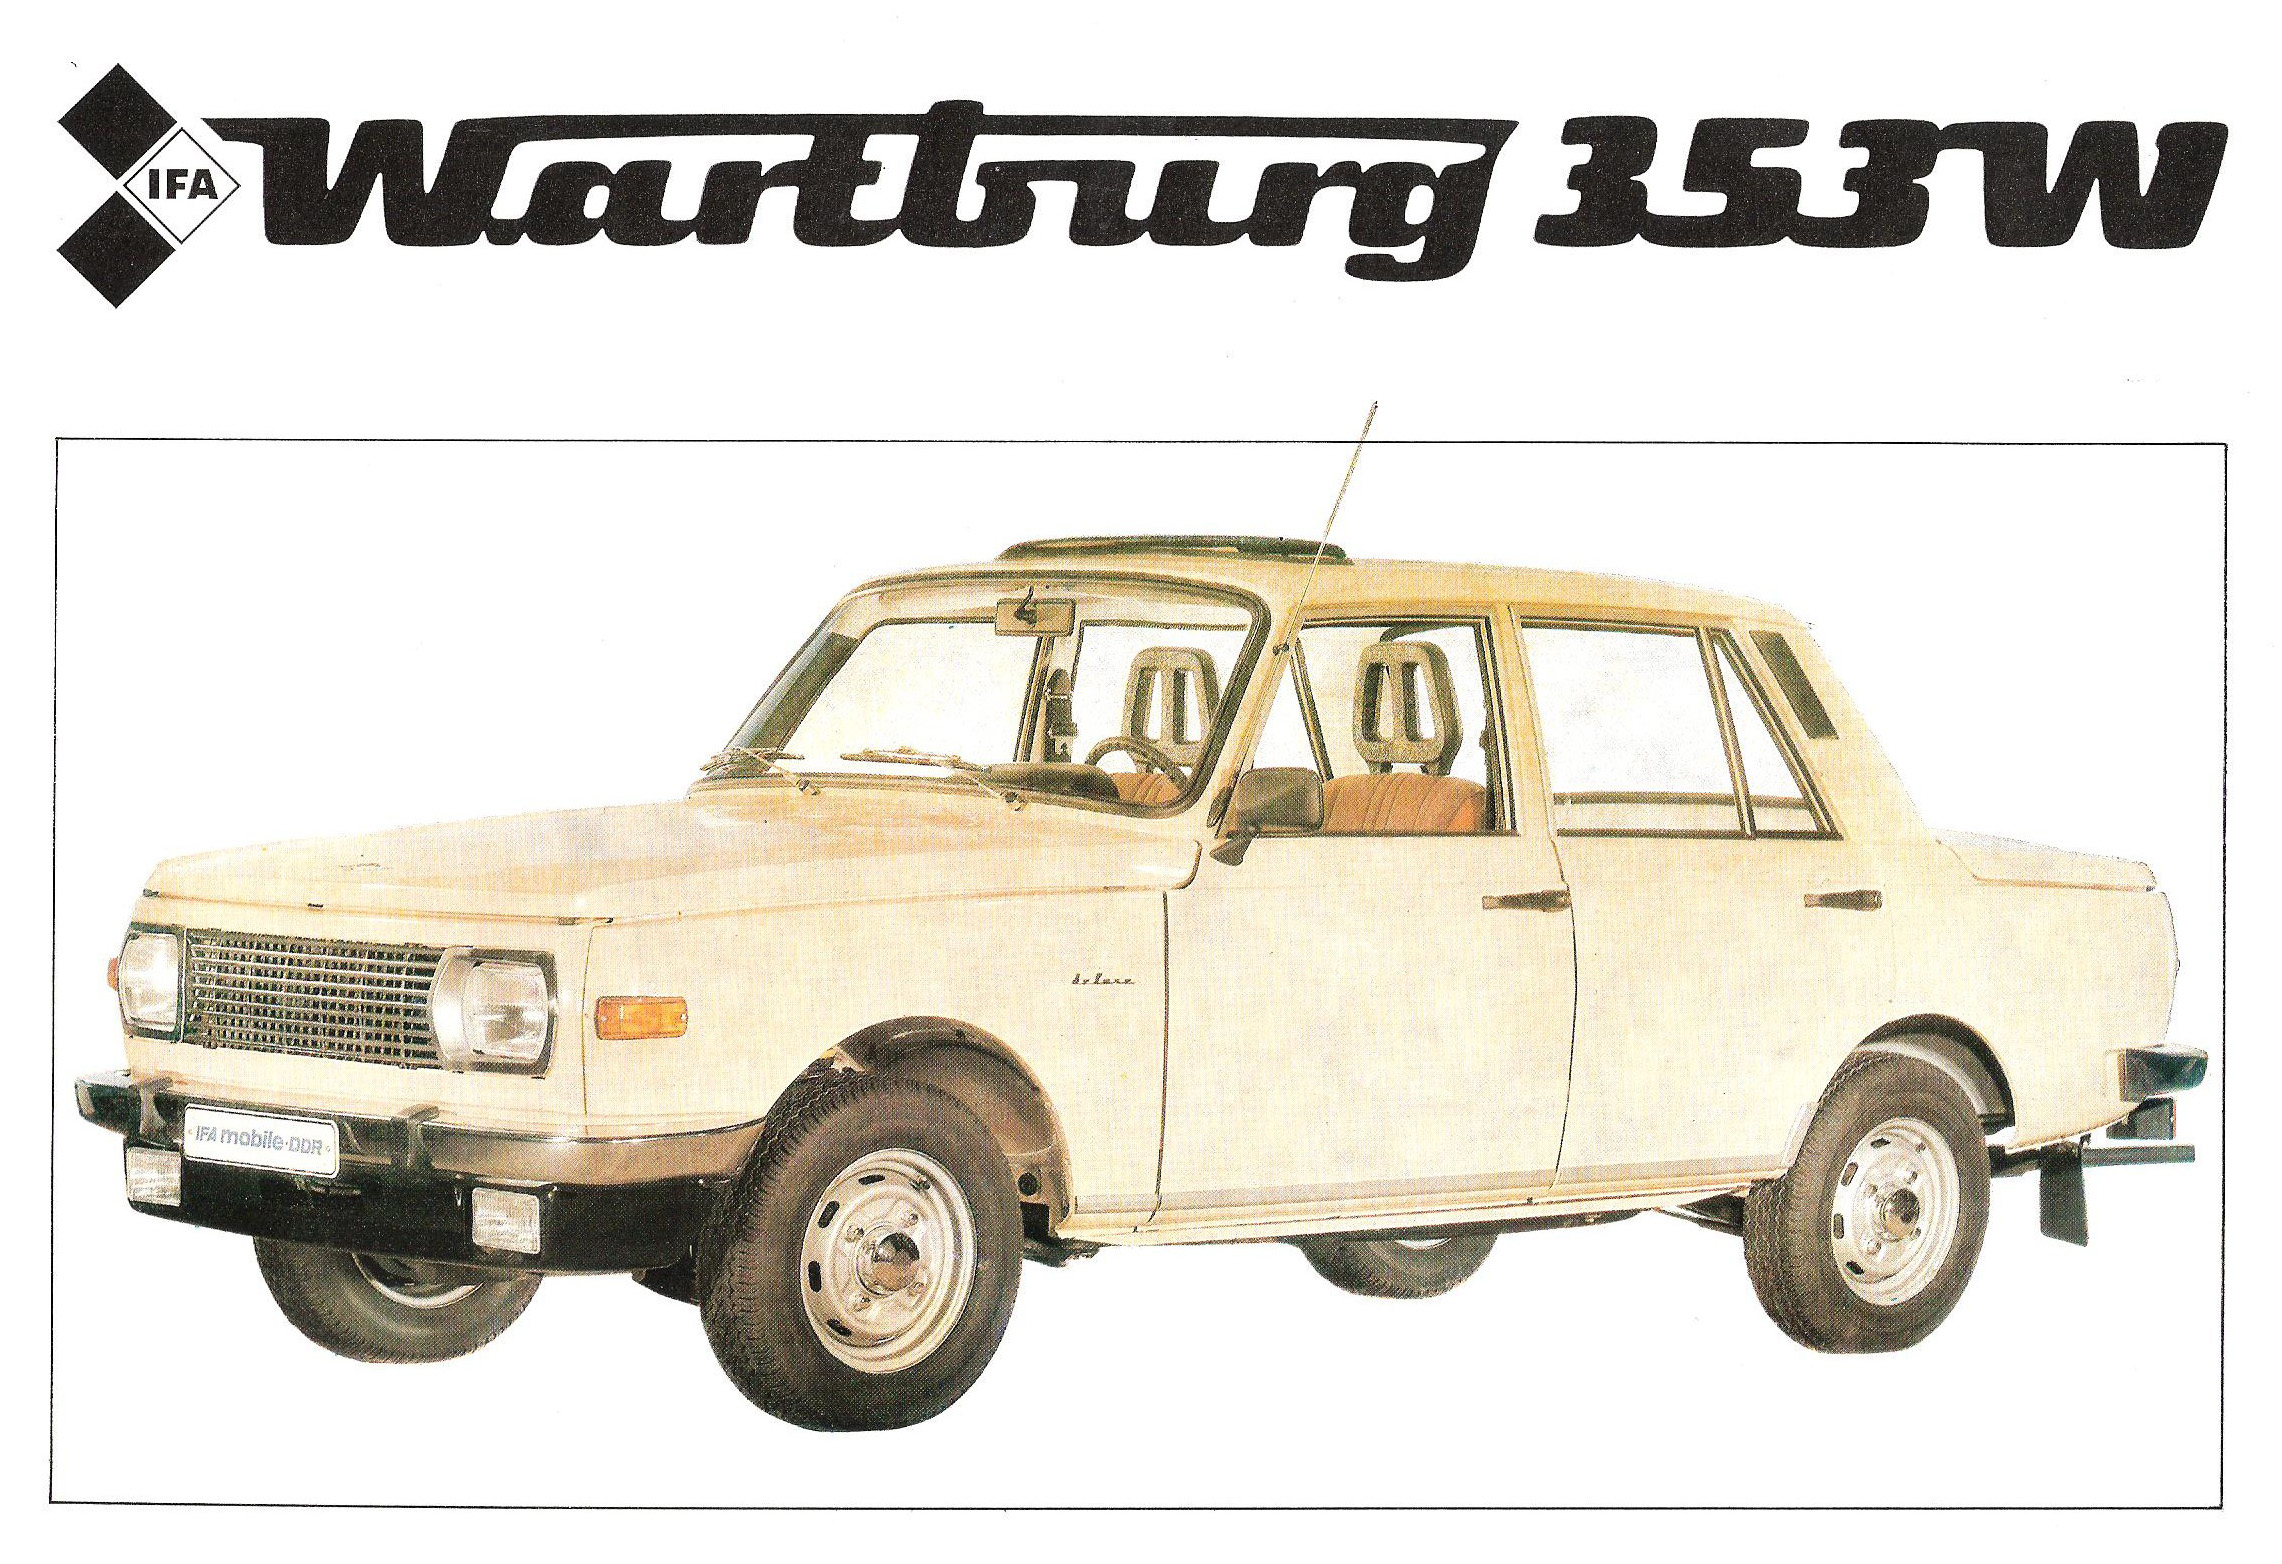 Wartburg 353W wagon